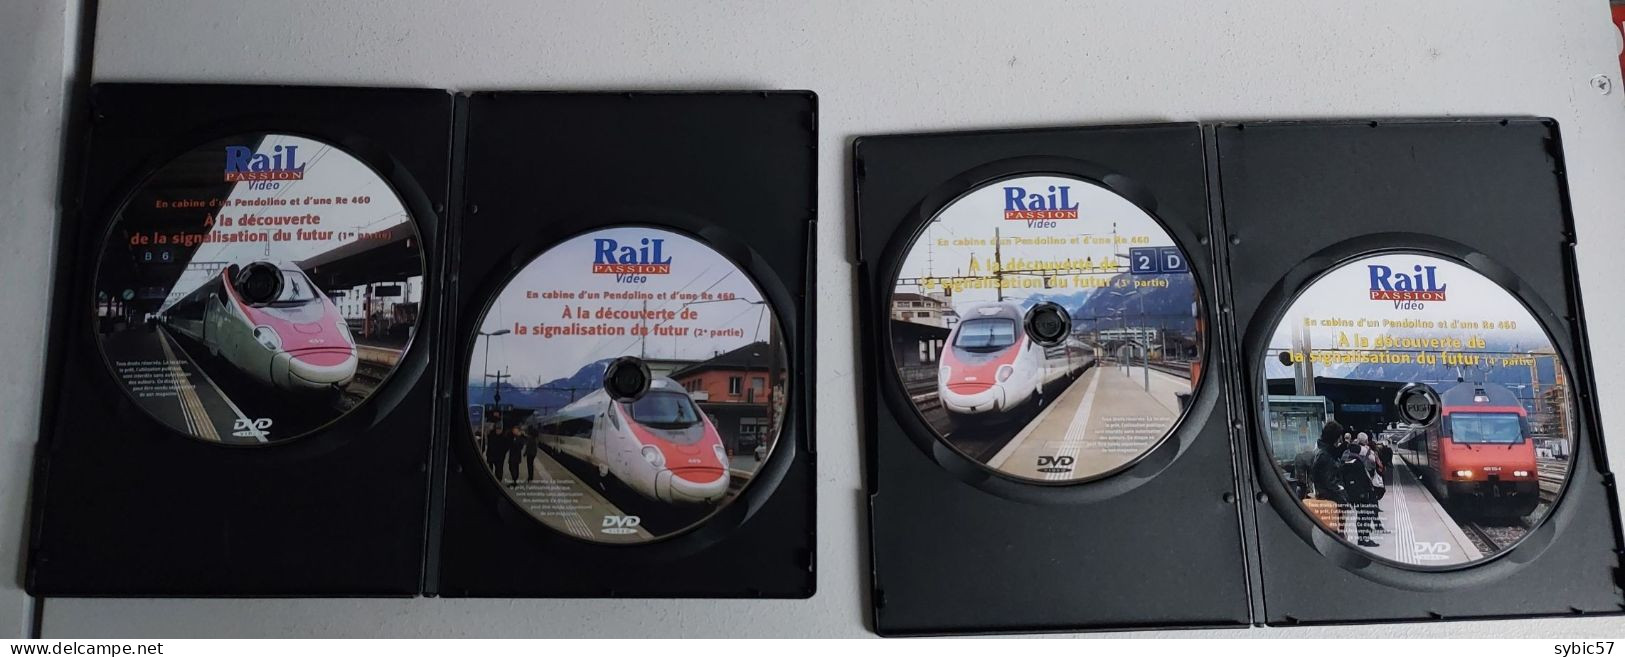 DVD Rail Passion " En Cabine D'un Pendolino Et D'une Re 460. A La Découverte De La Signalisation Du Futur " - Documentaires